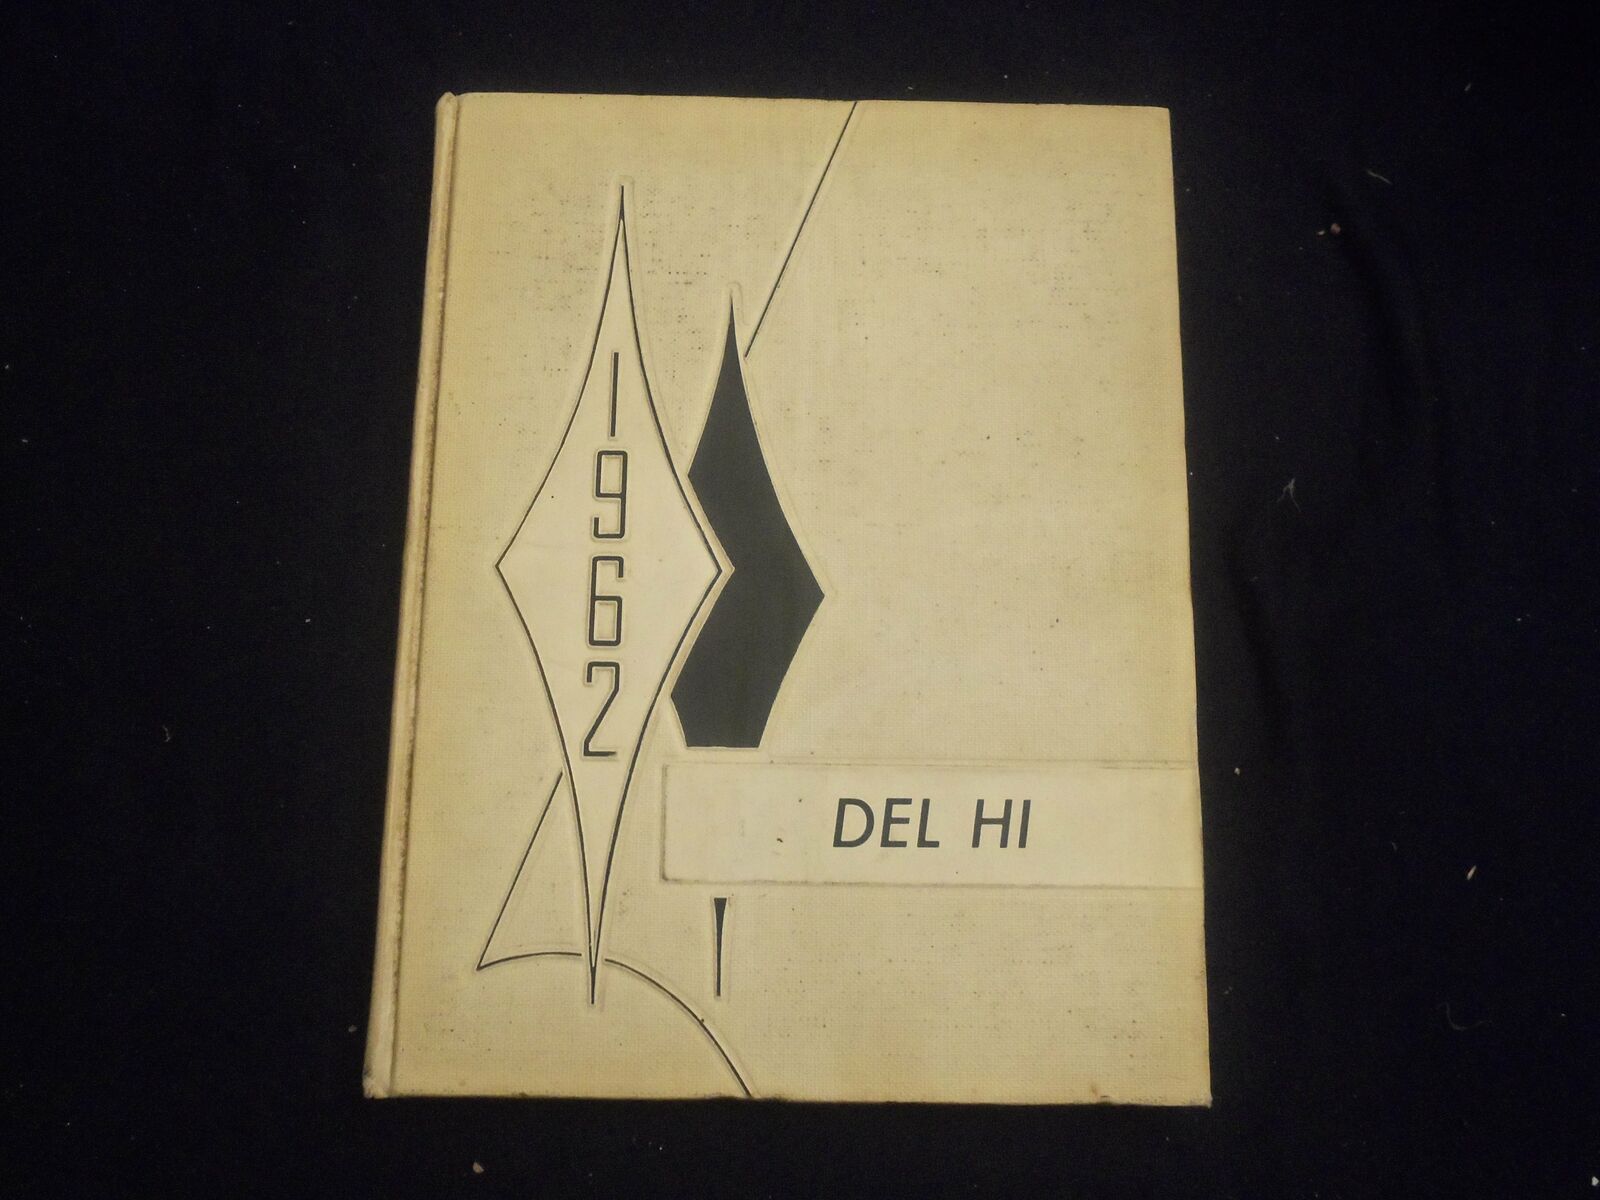 1962 THE DEL-HI DELTA HIGH SCHOOL YEARBOOK - DELTA, OHIO - YB 2759